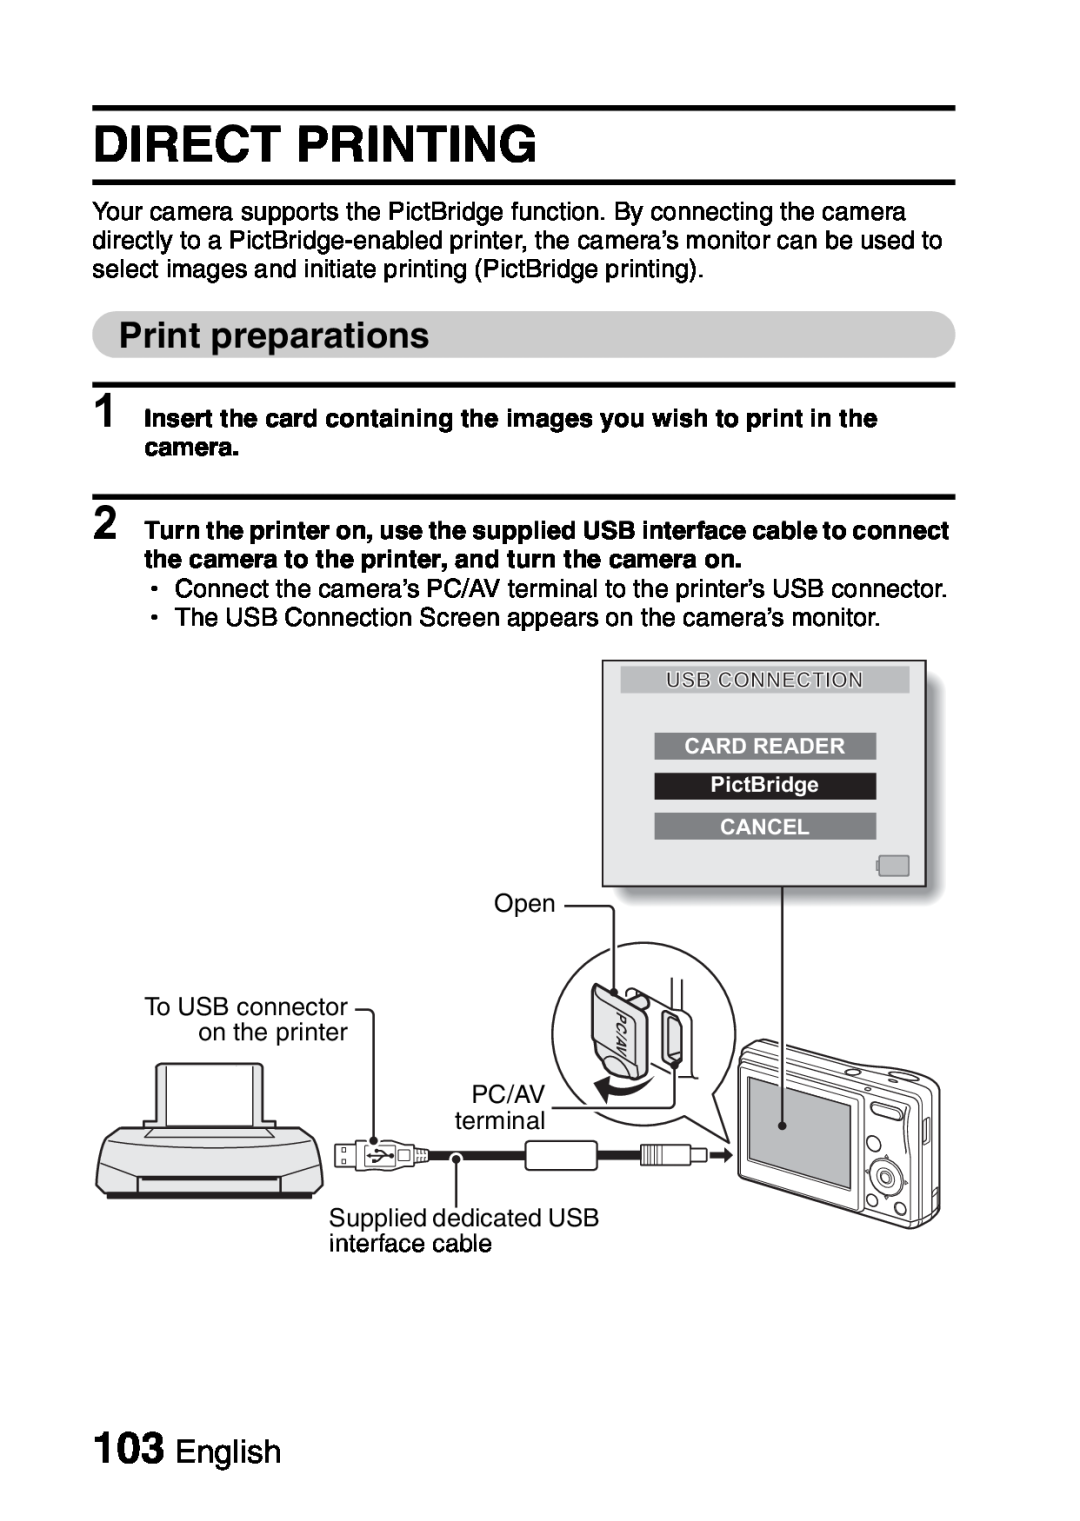 Sanyo VPC-S60 instruction manual Direct Printing, Print preparations, English 